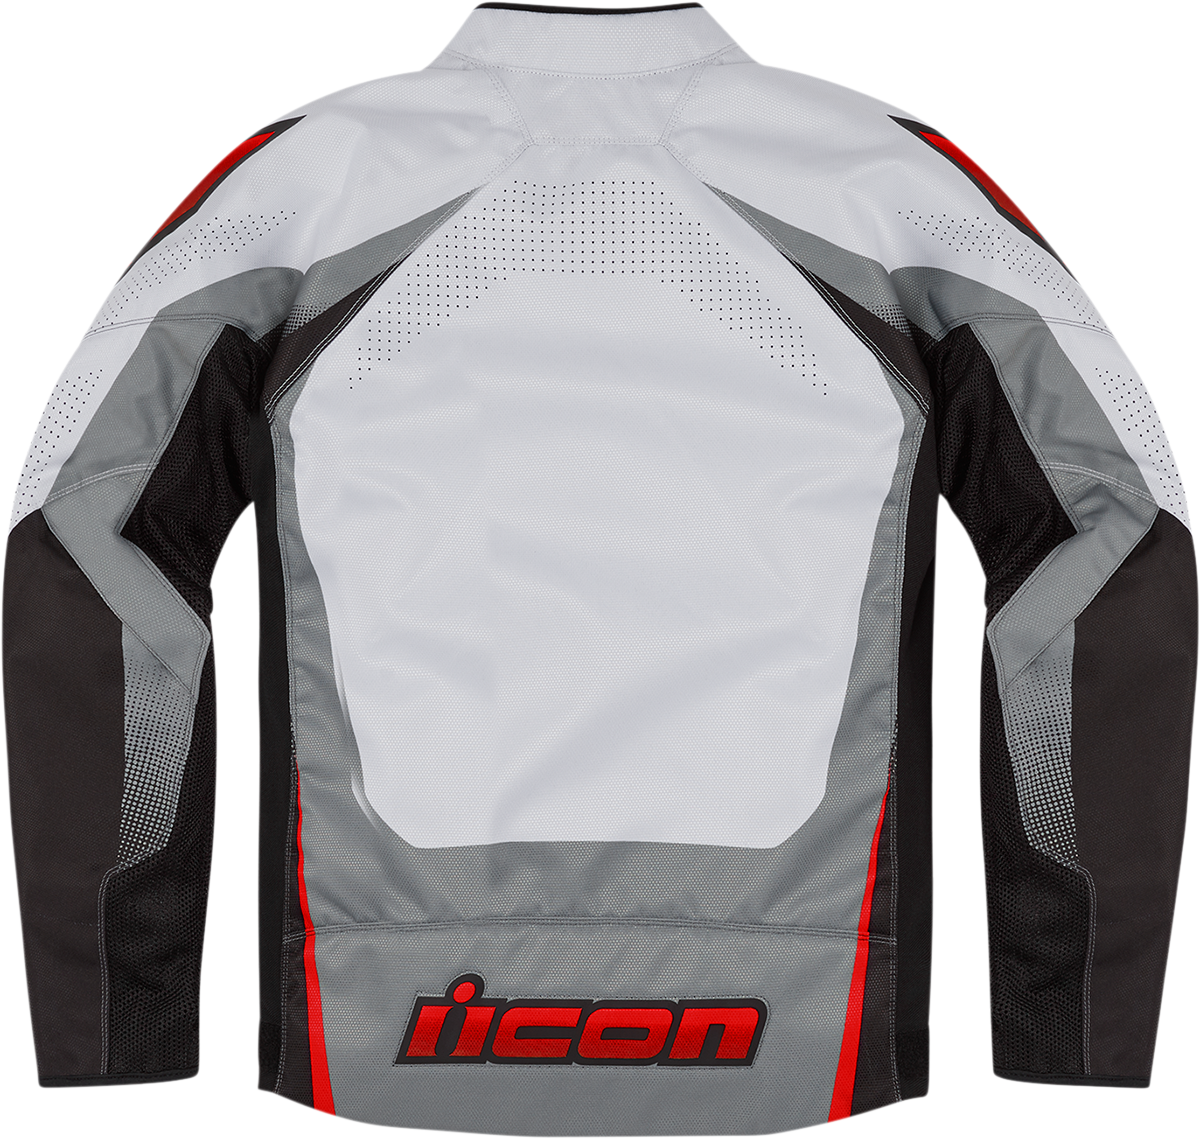 ICON Hooligan Ultrabolt Jacket - Gray/Red - Medium 2820-5541